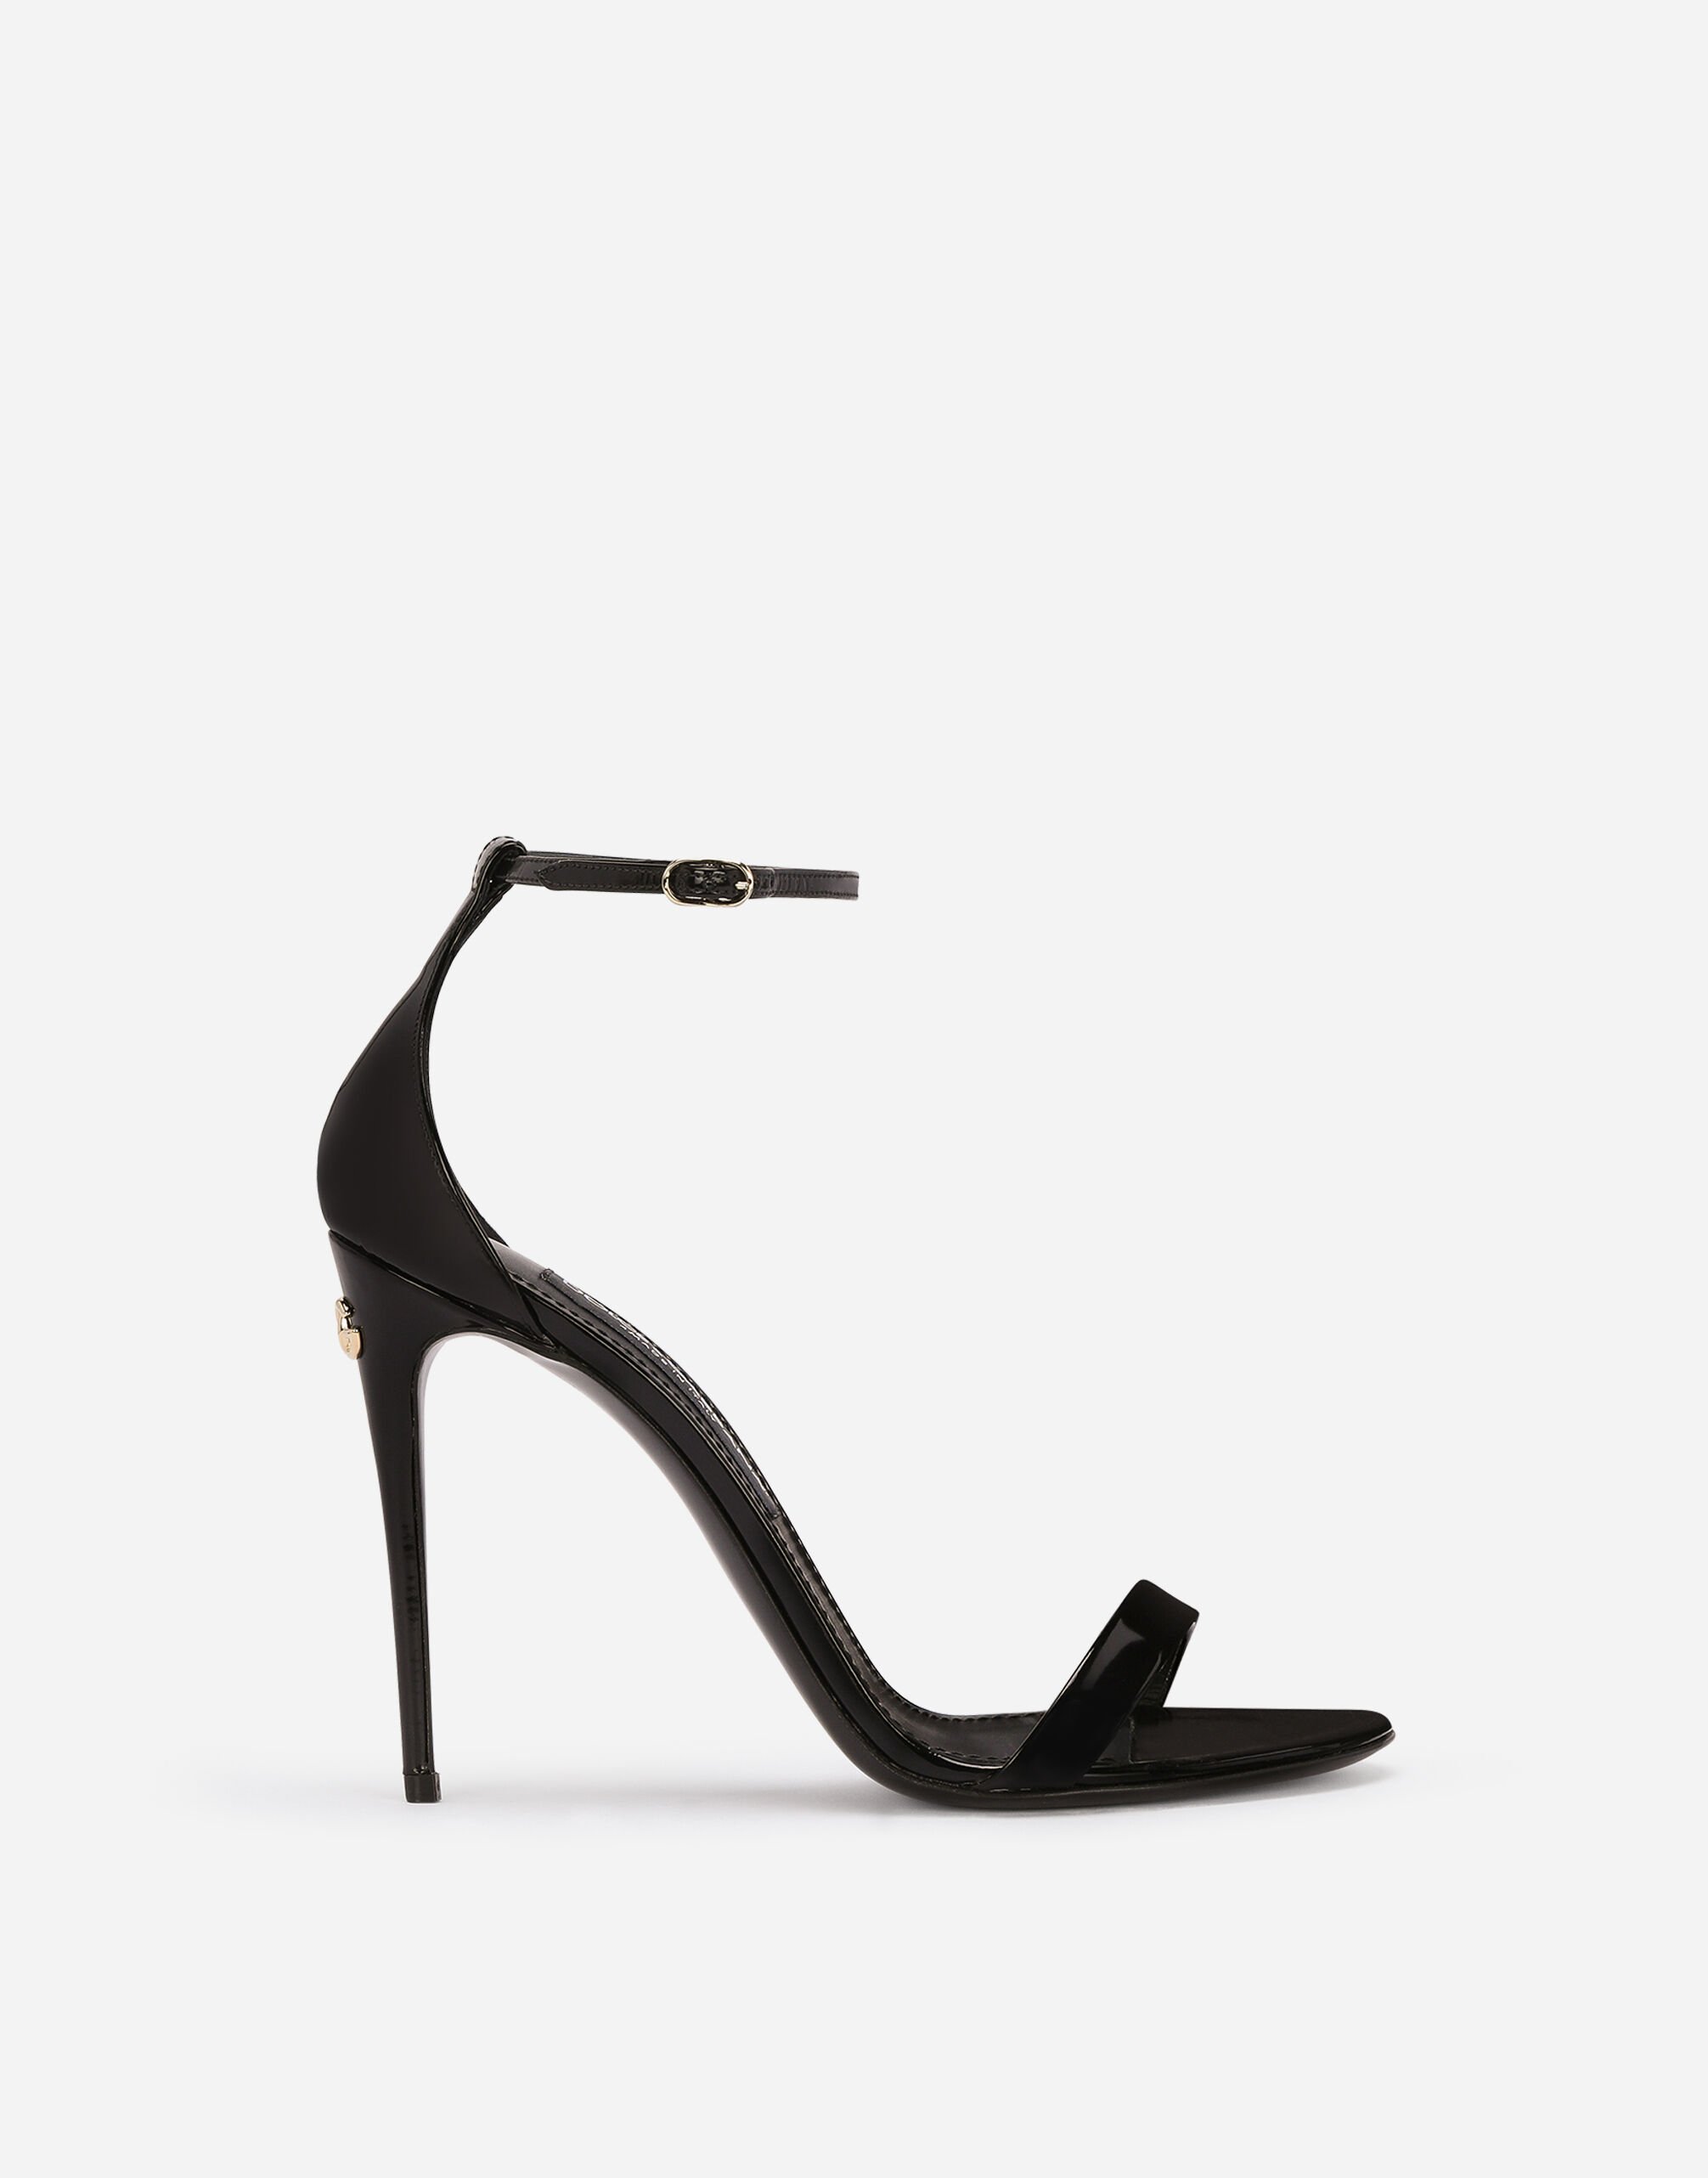 Dolce & Gabbana Polished calfskin sandals Black F29XTTFUWD6